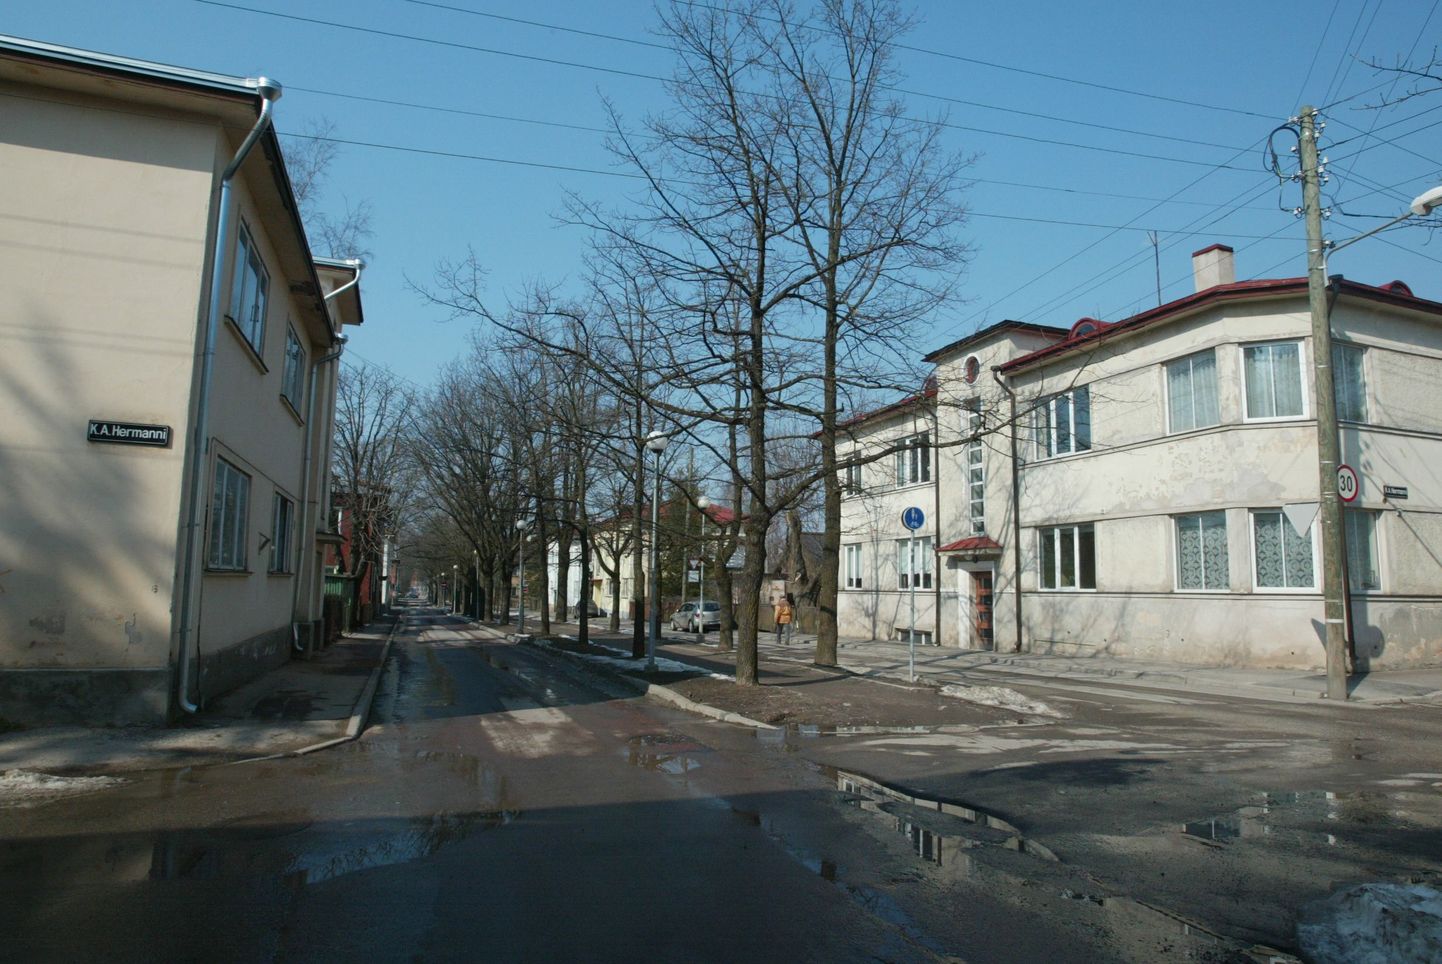 Õppus hõlmab Tartu Tähtvere linnaosa. Pildil Taara pst ja K. A. Hermanni ristmik.